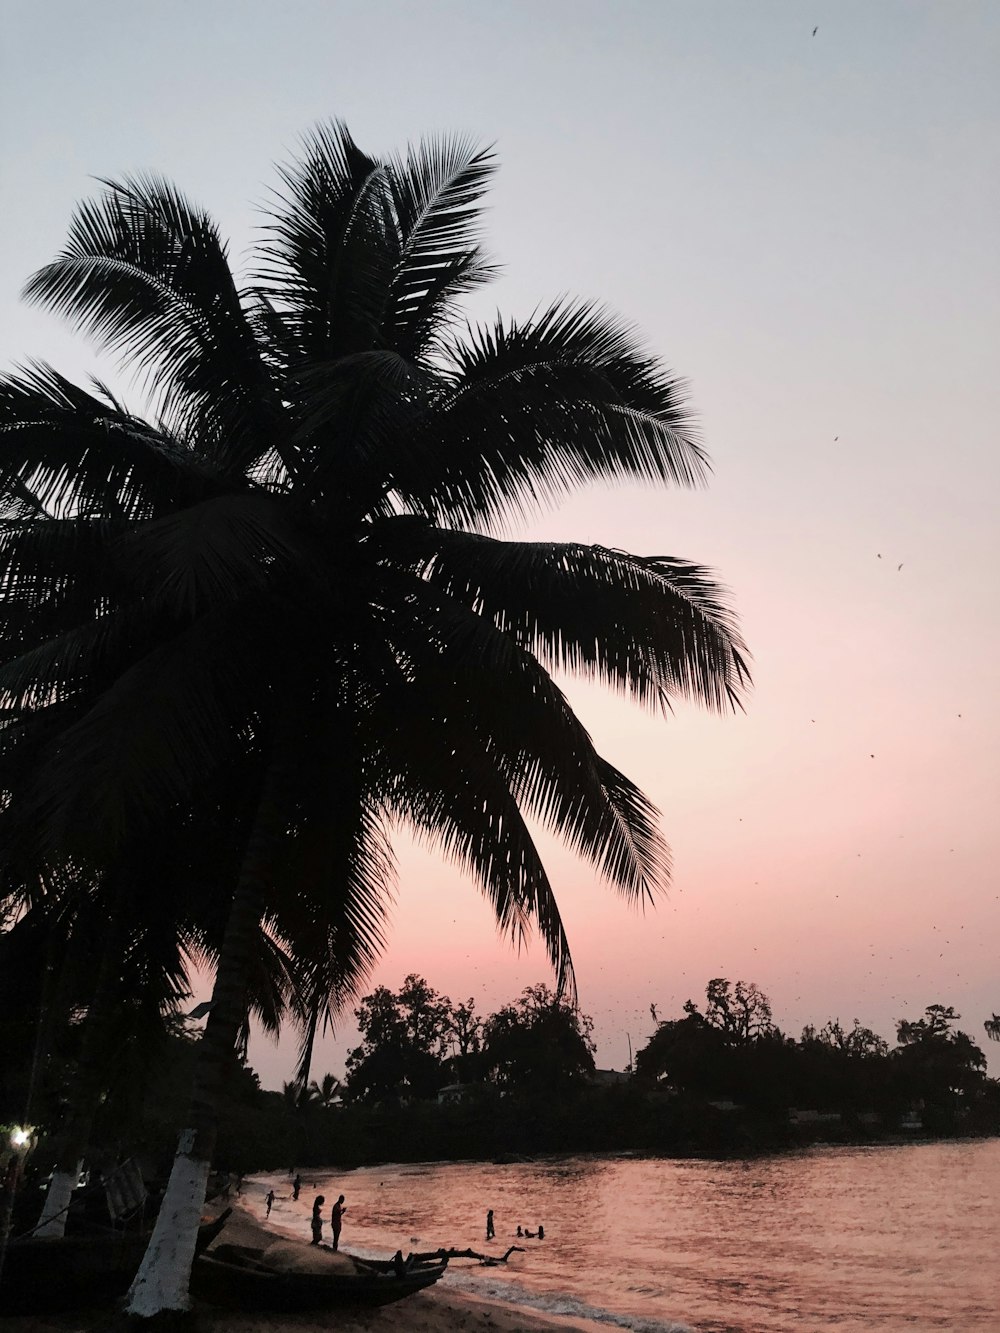 바닷가에 있는 코코넛 나무의 실루엣 사진